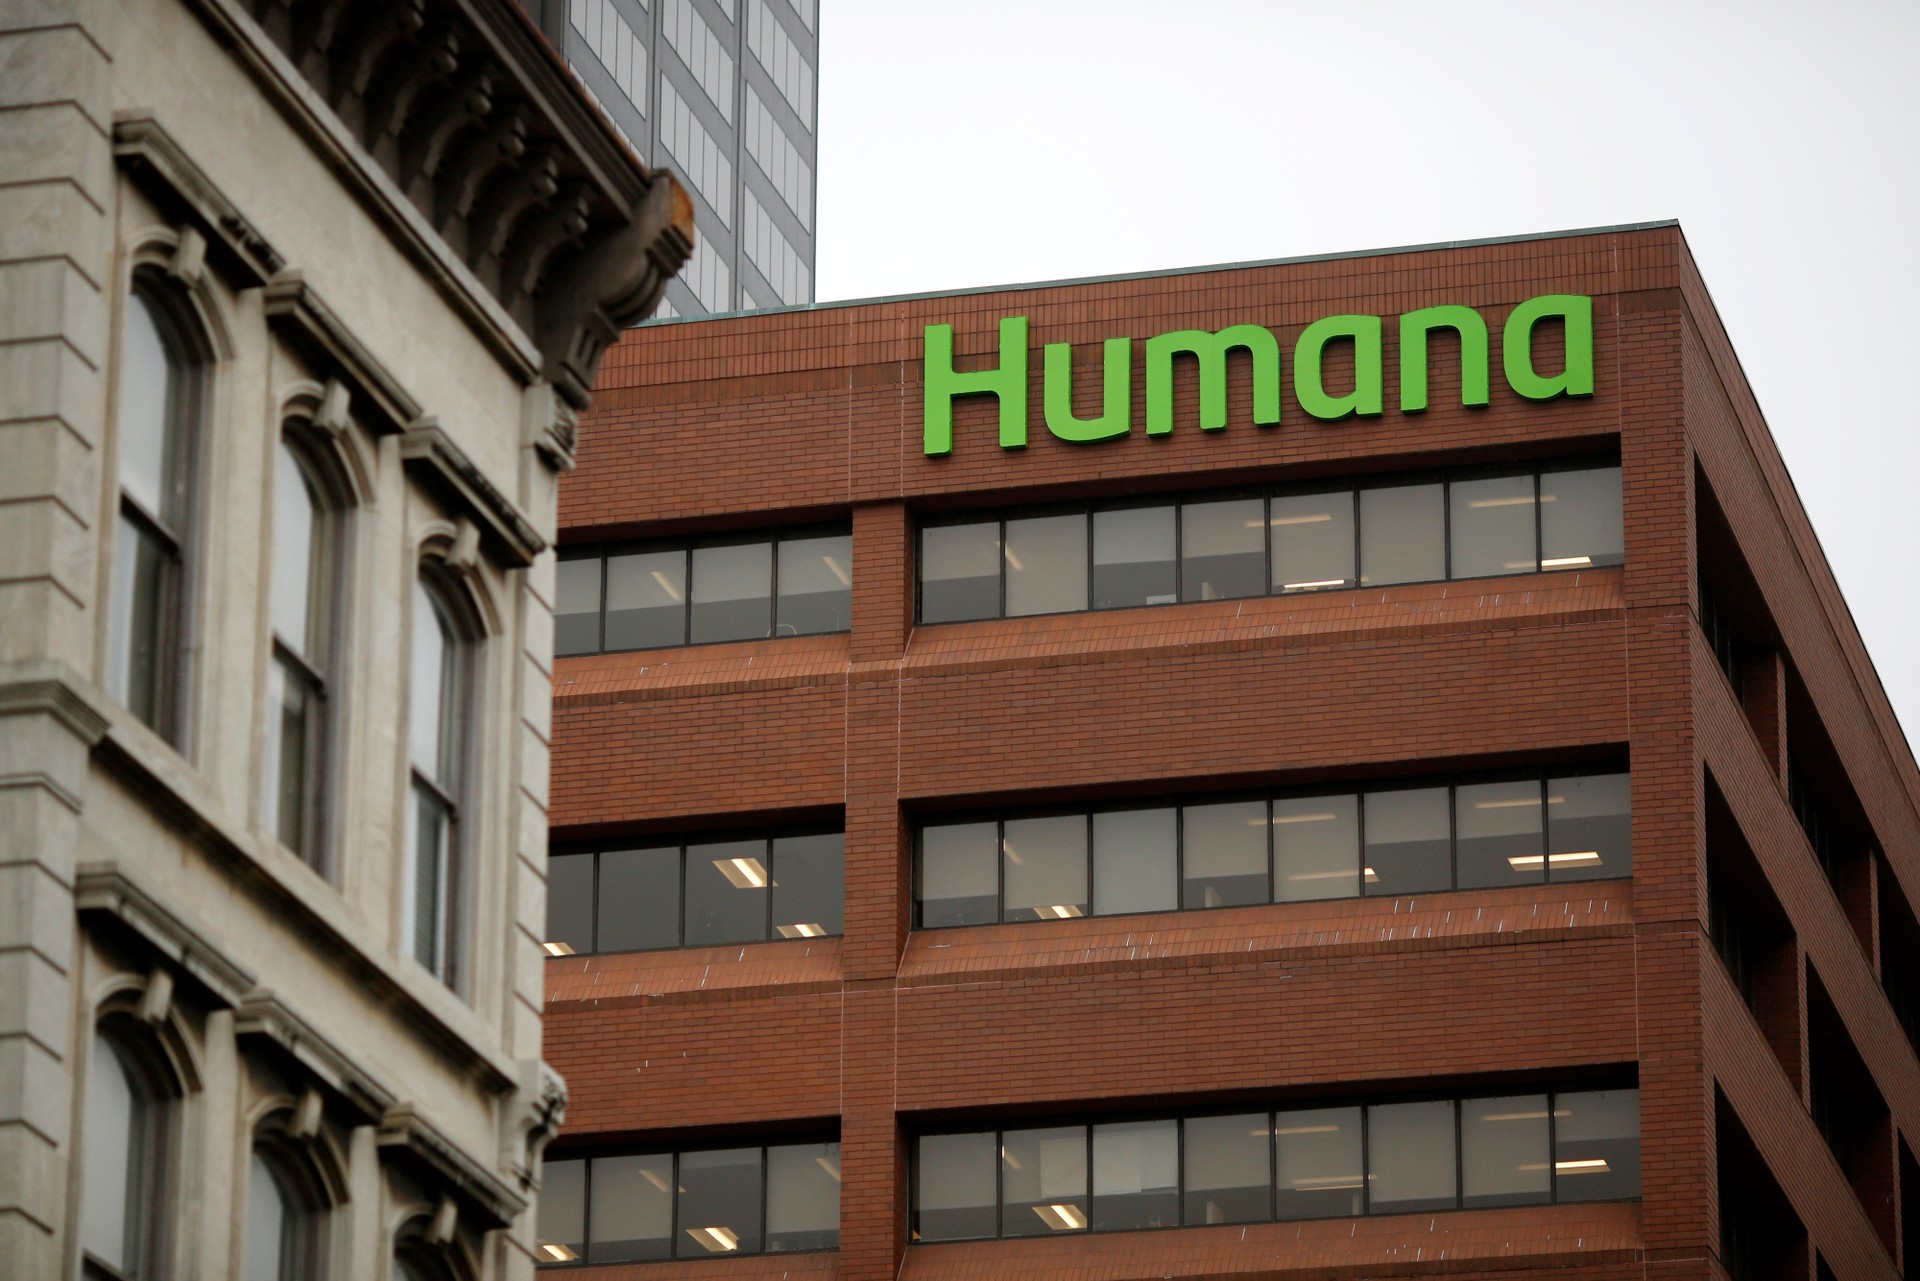 Marketing Strategy of Humana - Humana